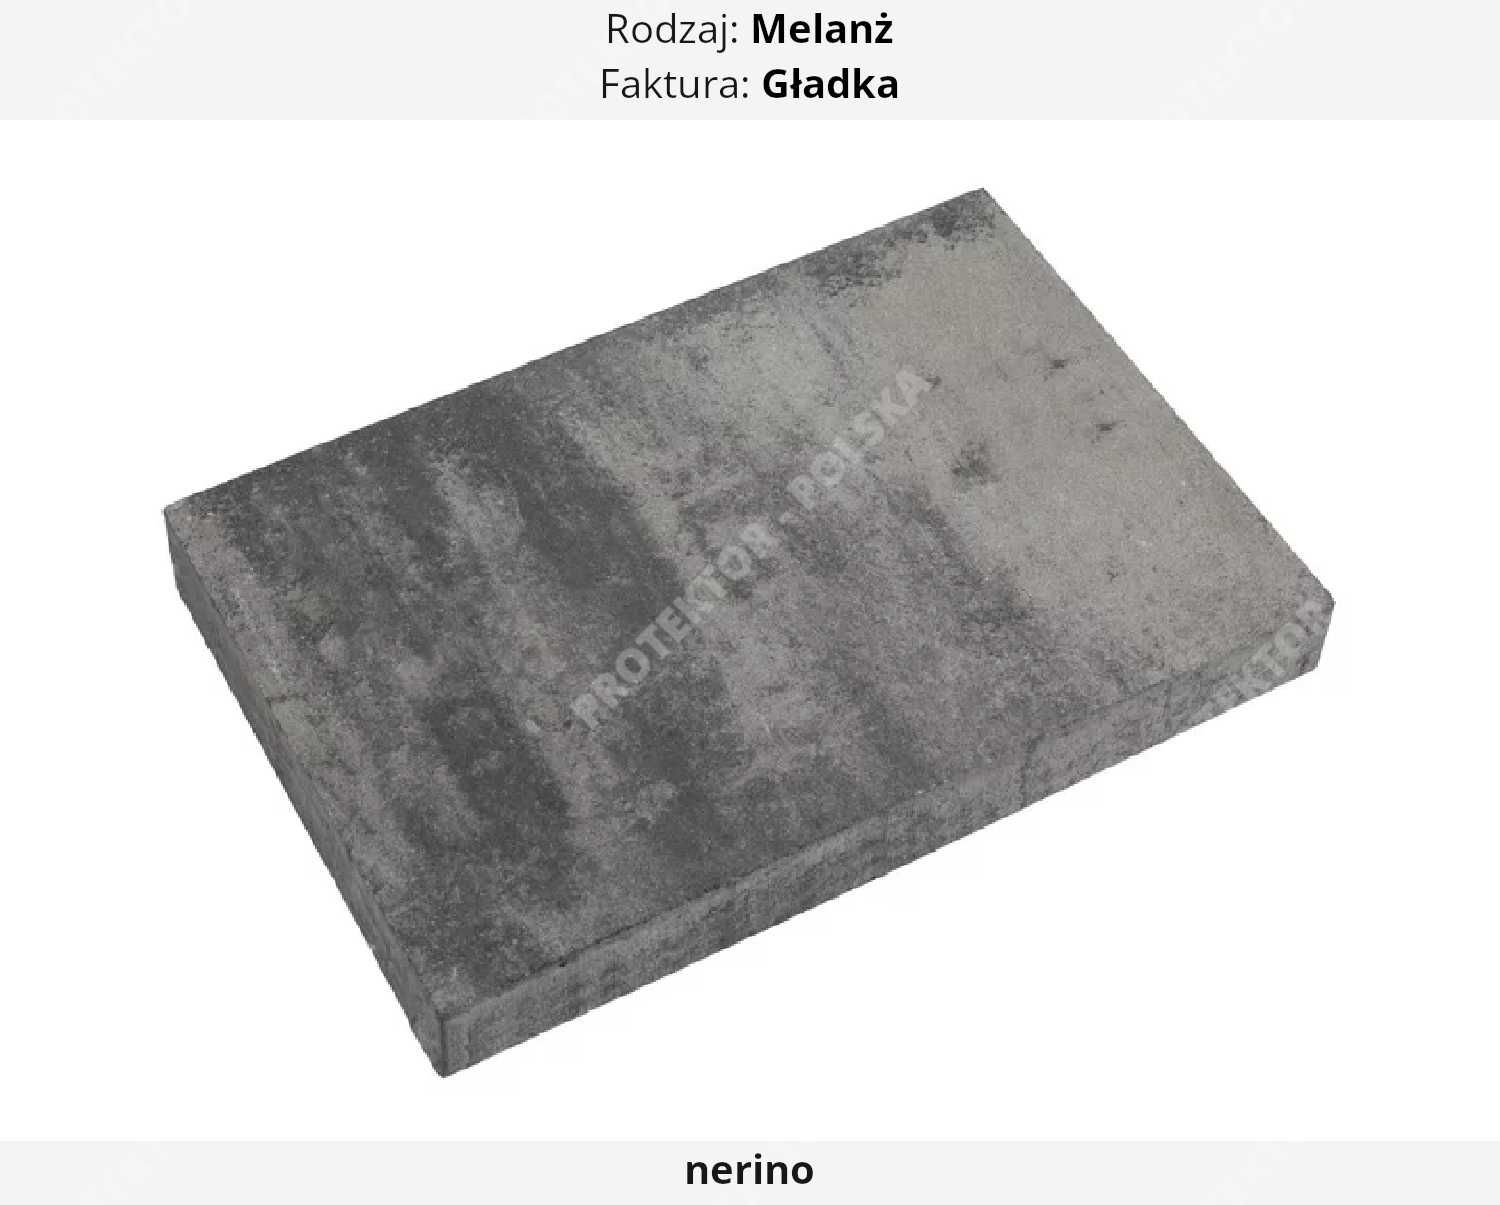 płyta tarasowa MAGNA Bruk betonowa chodnikowa kostka brukowa ścieżka